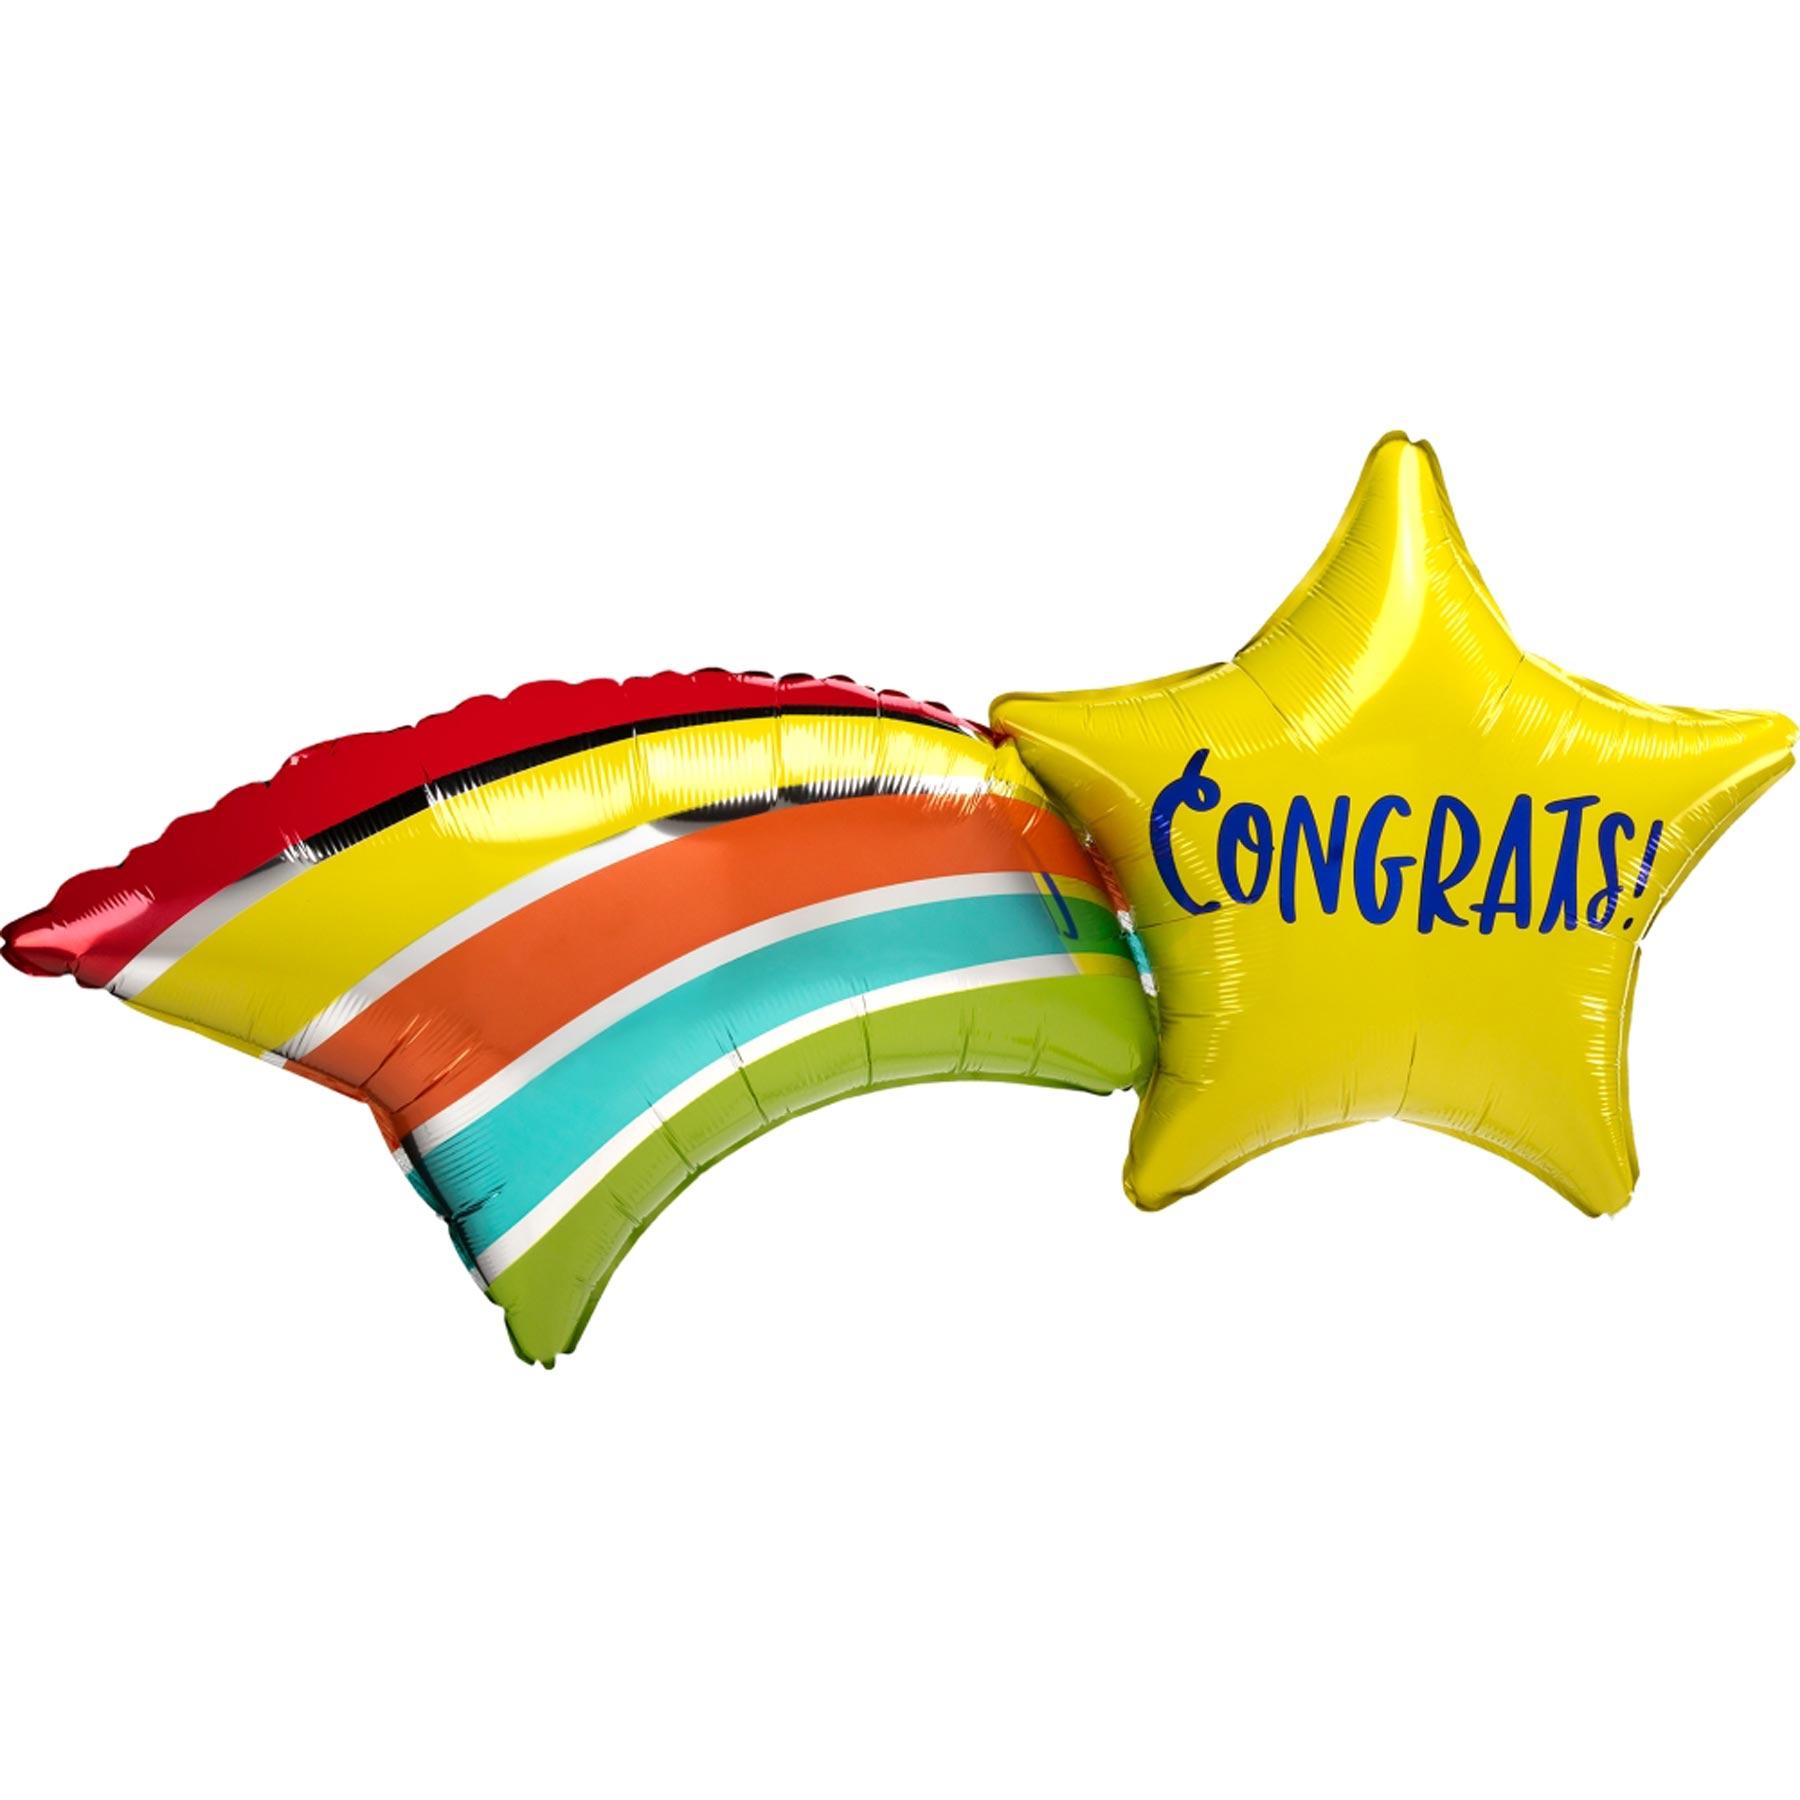 Congratz Shooting Star SuperShape Balloon 68x55cm Balloons & Streamers - Party Centre